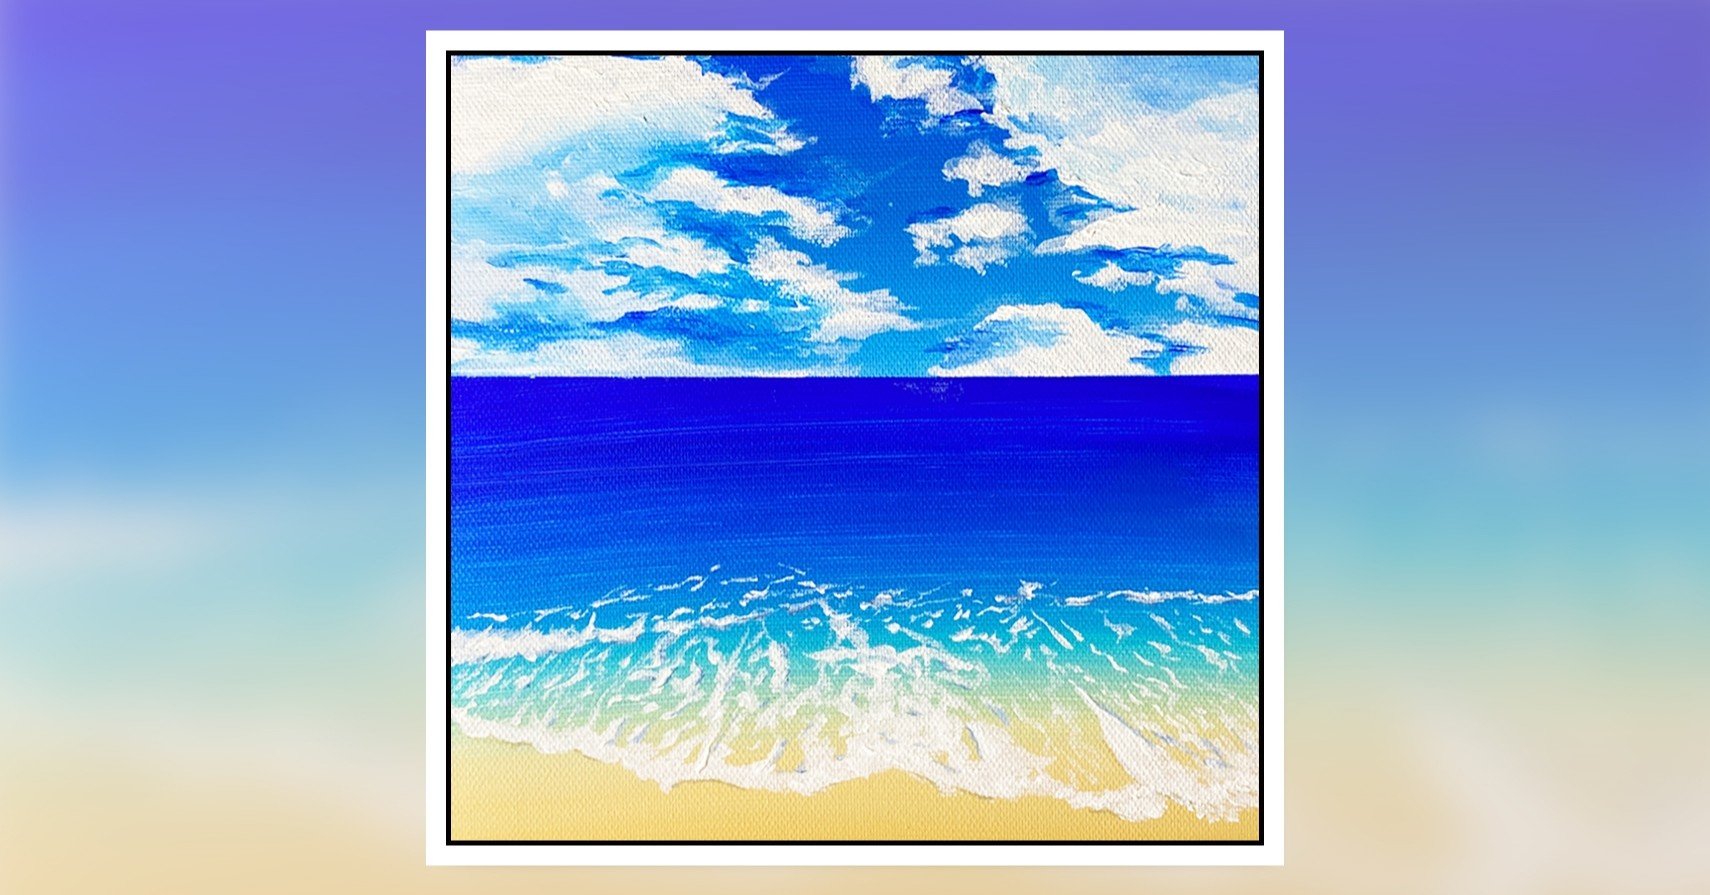 アクリル絵の具を使用した「夏空と海」の描き方 / 初心者が簡単に絵を